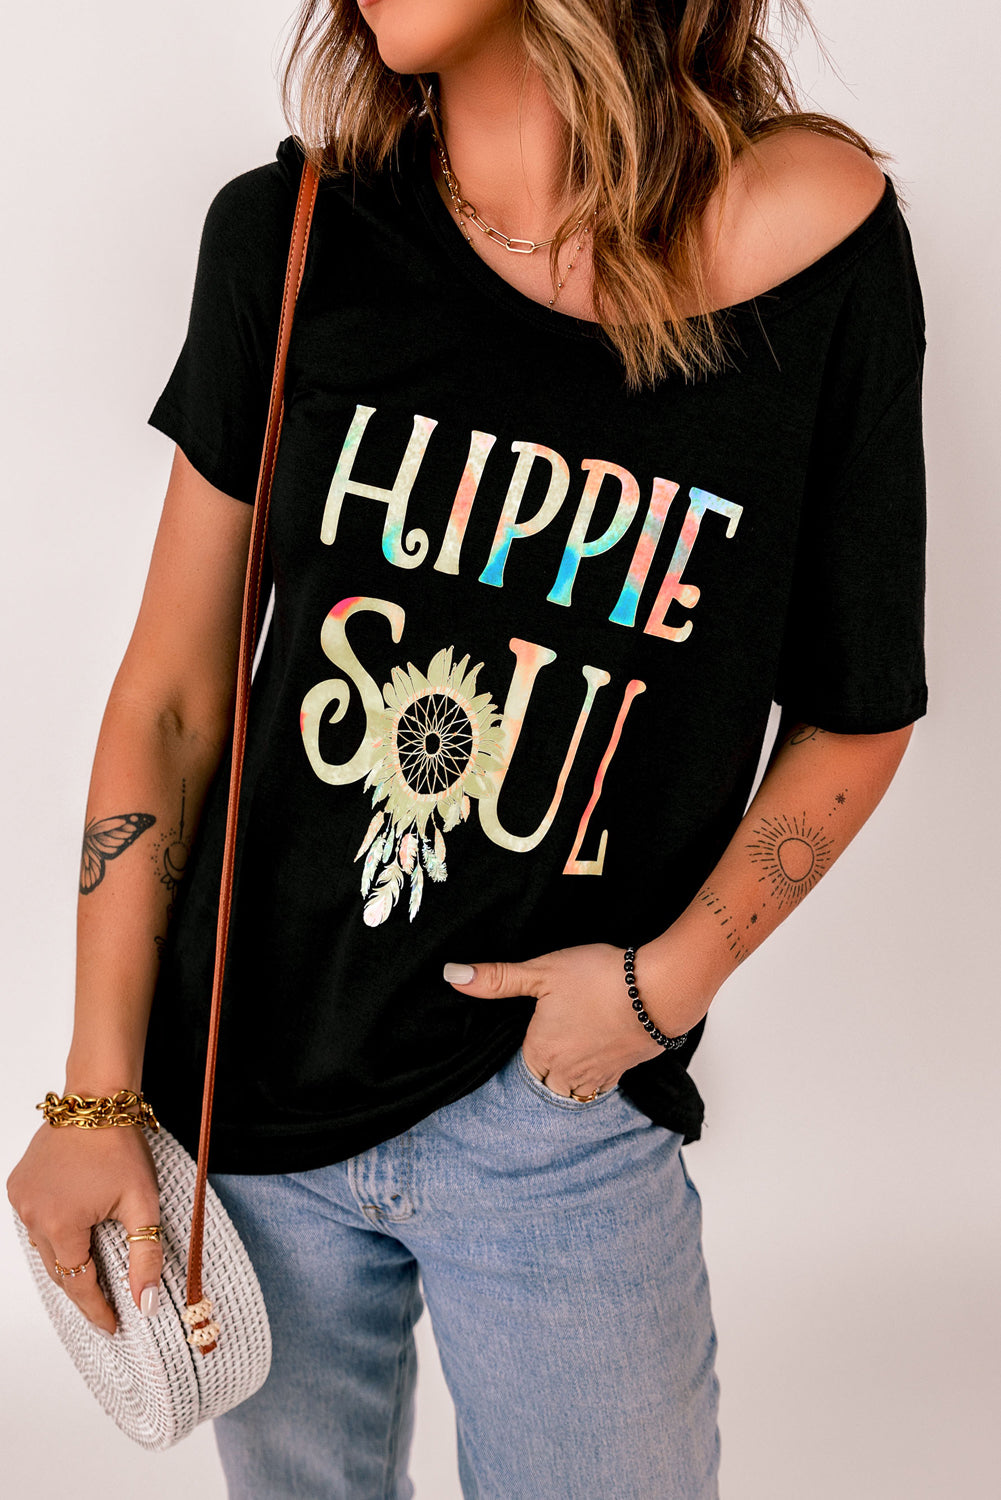 Ombre Tie-dye majica s potiskom sončničnega perja HIPPIE SOUL